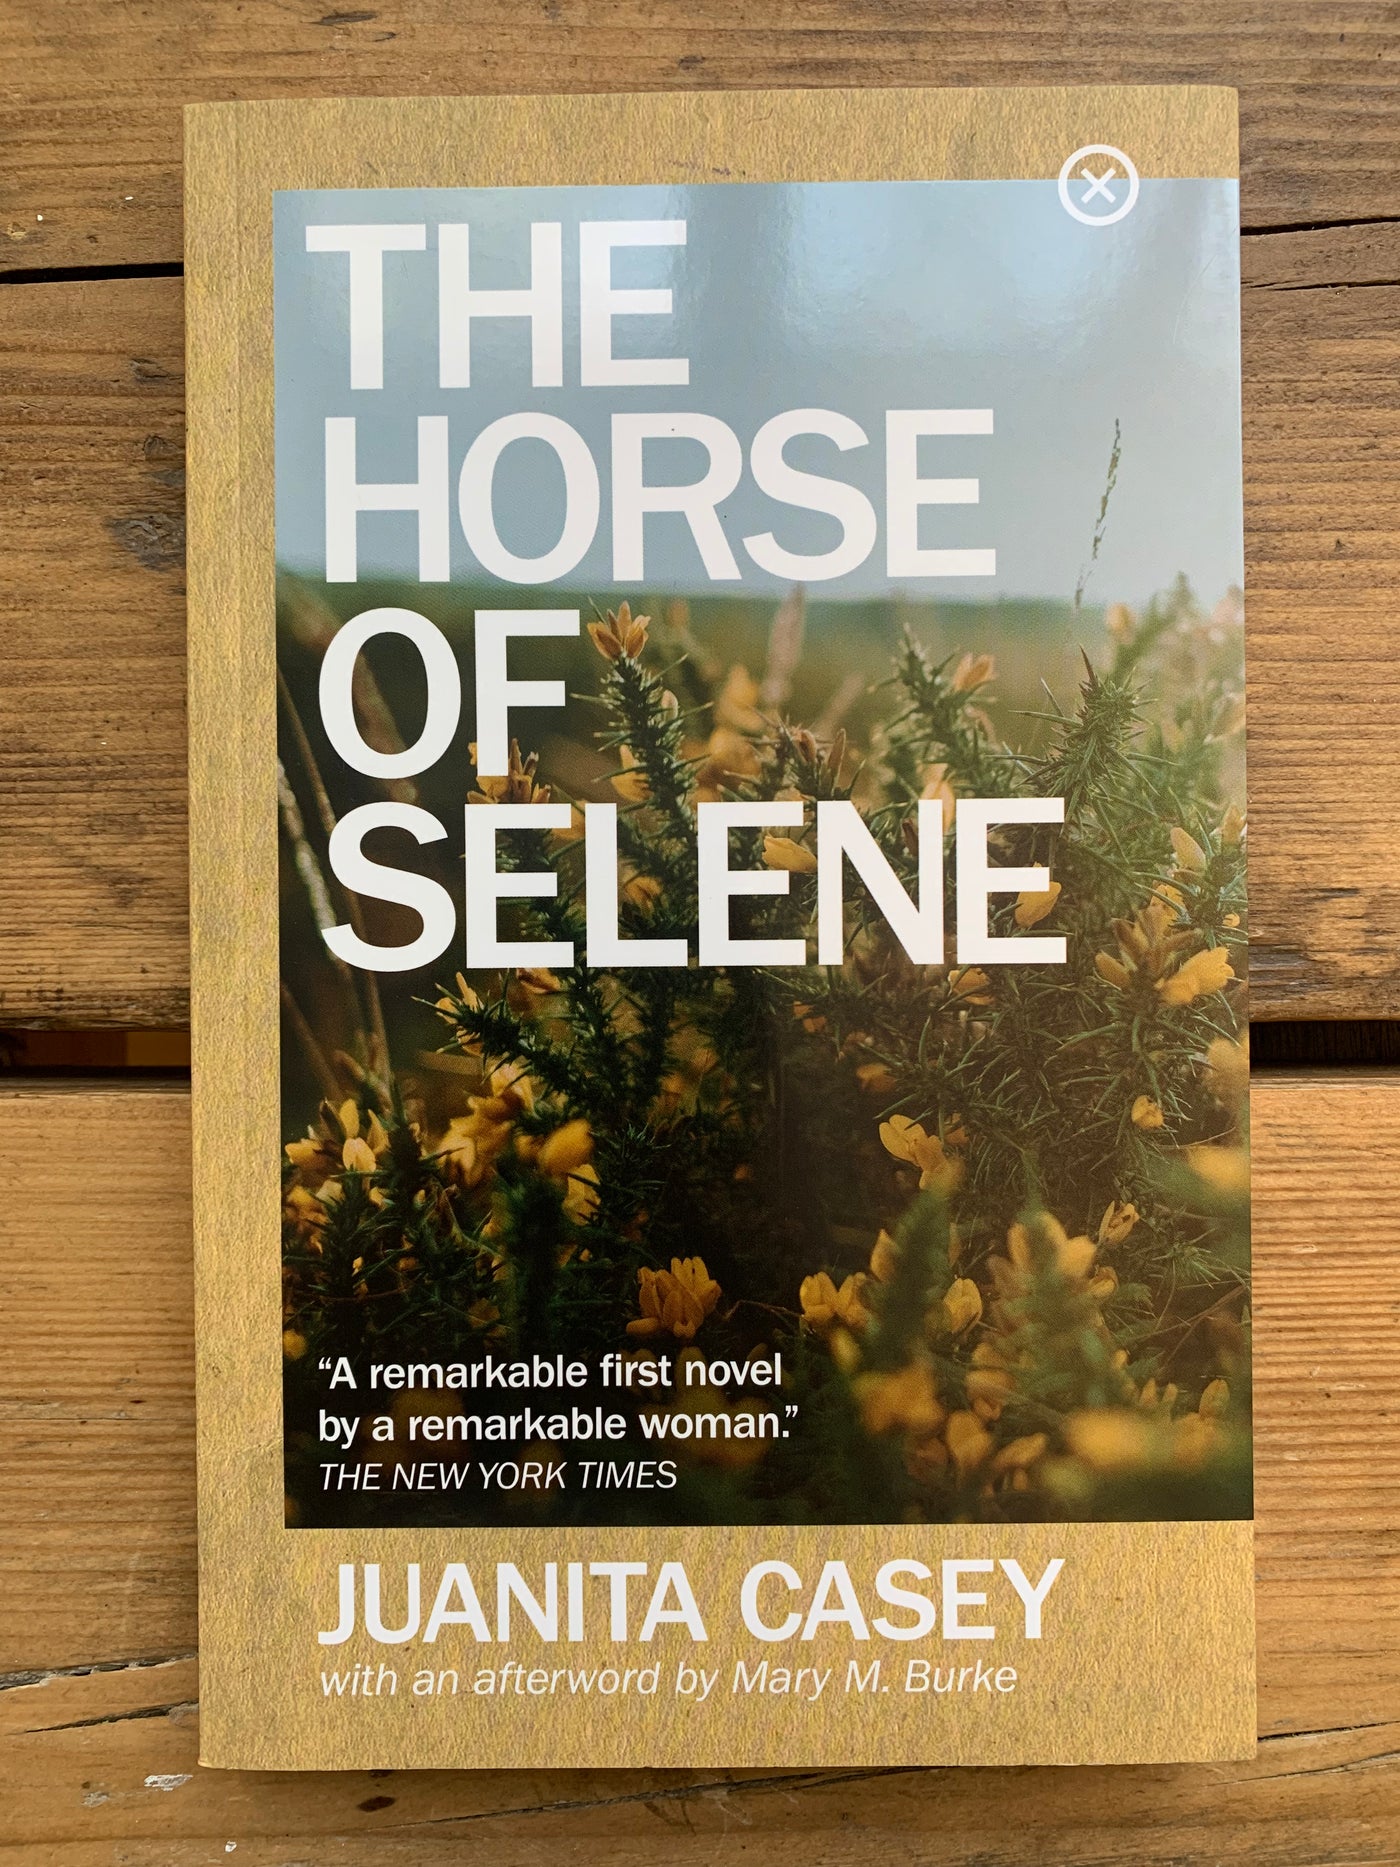 The Horse of Selene